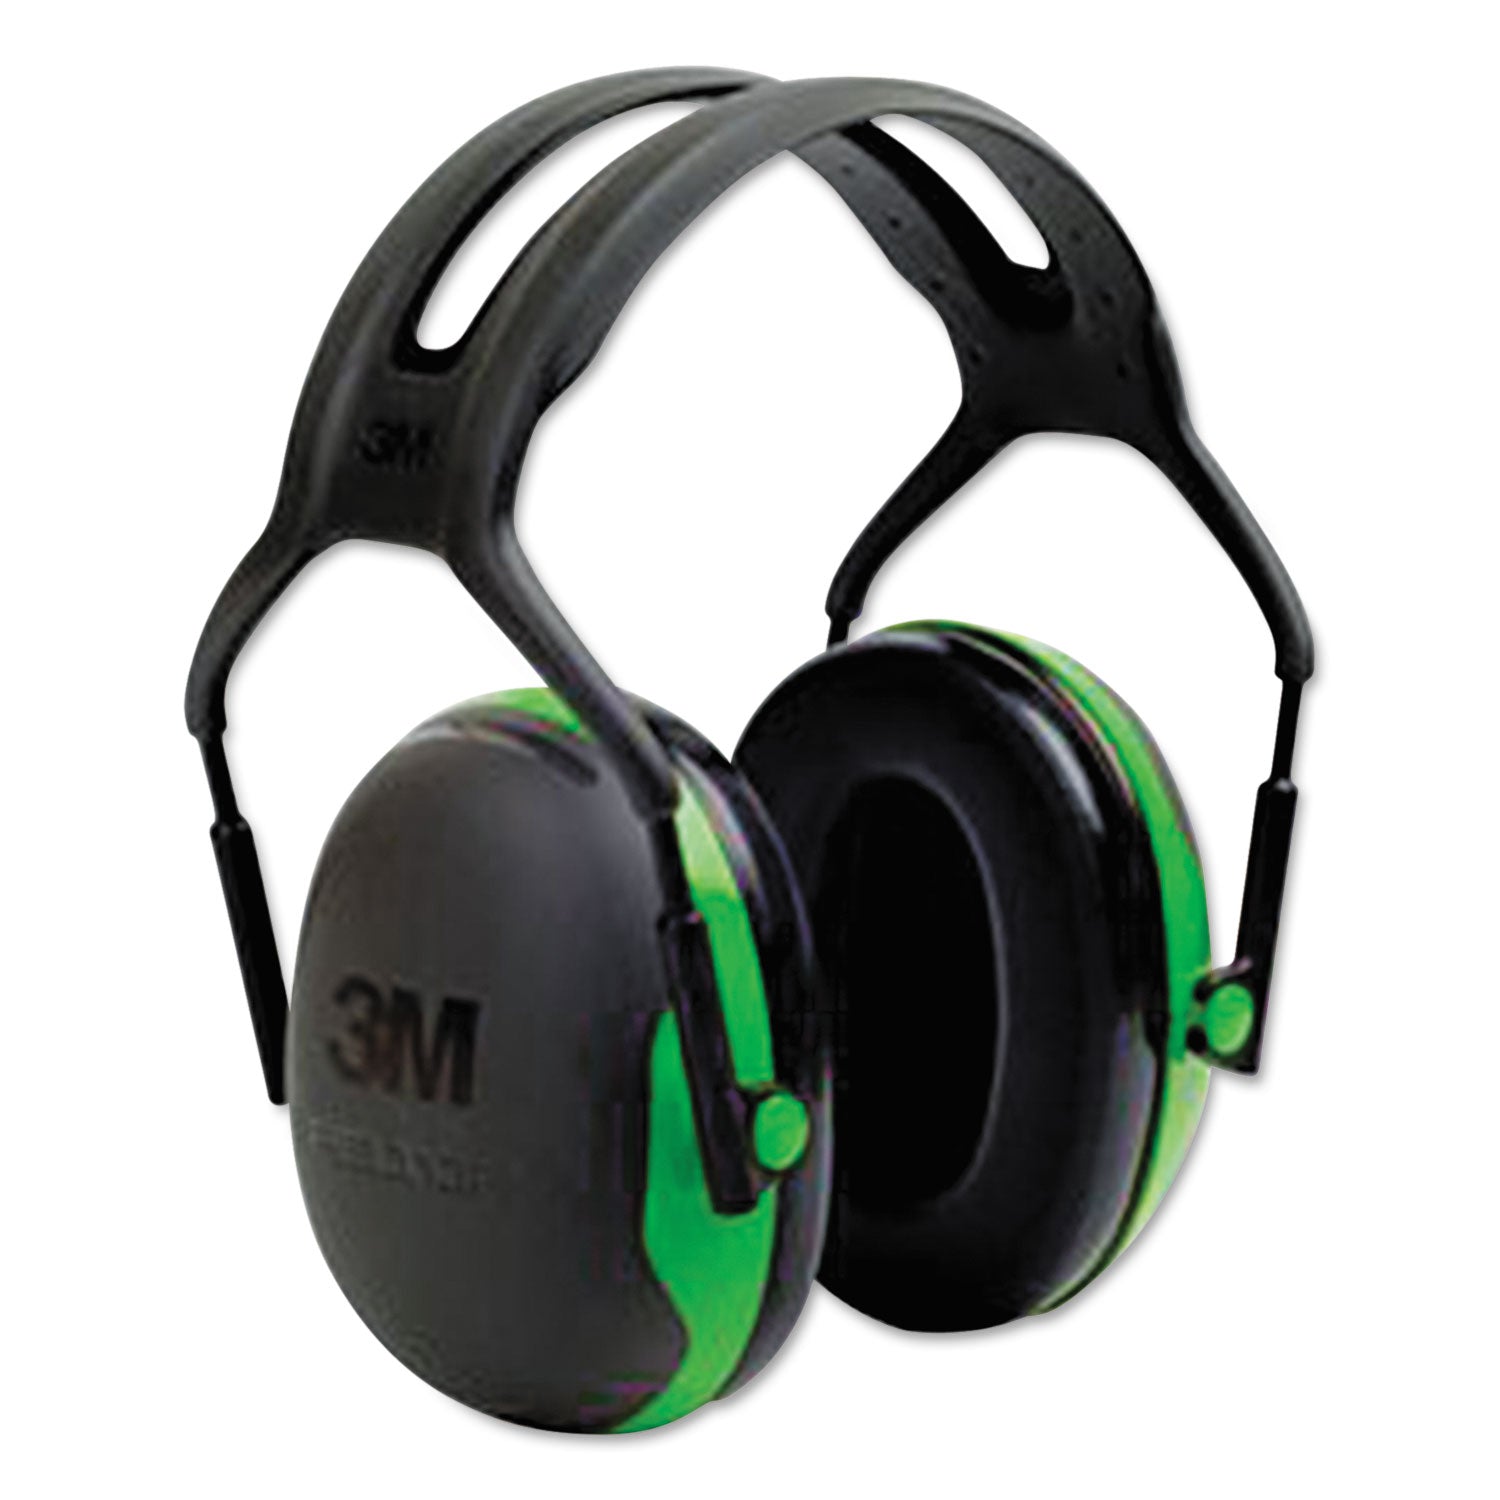 peltor-x-series-earmuffs-model-x1a-22-db-nrr-black-green_mmmx1a - 1